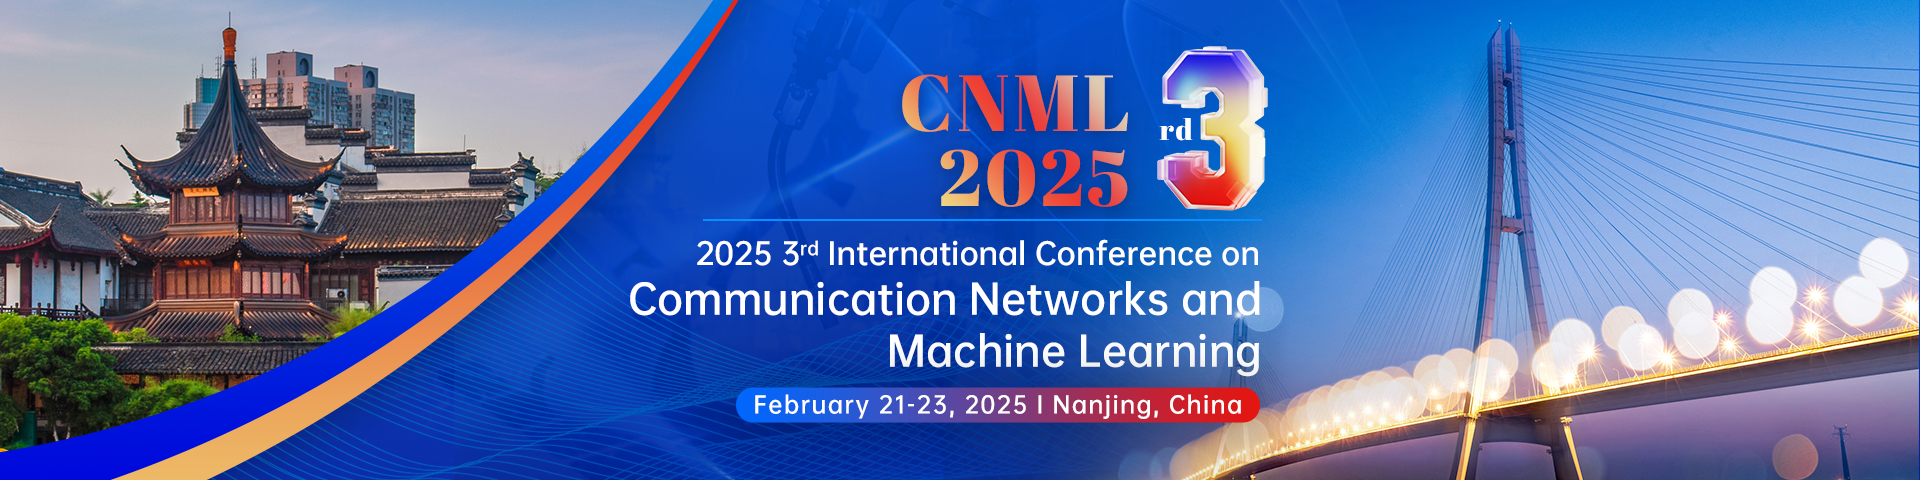 CNML 2025-会议官网轮播图（英文）.png